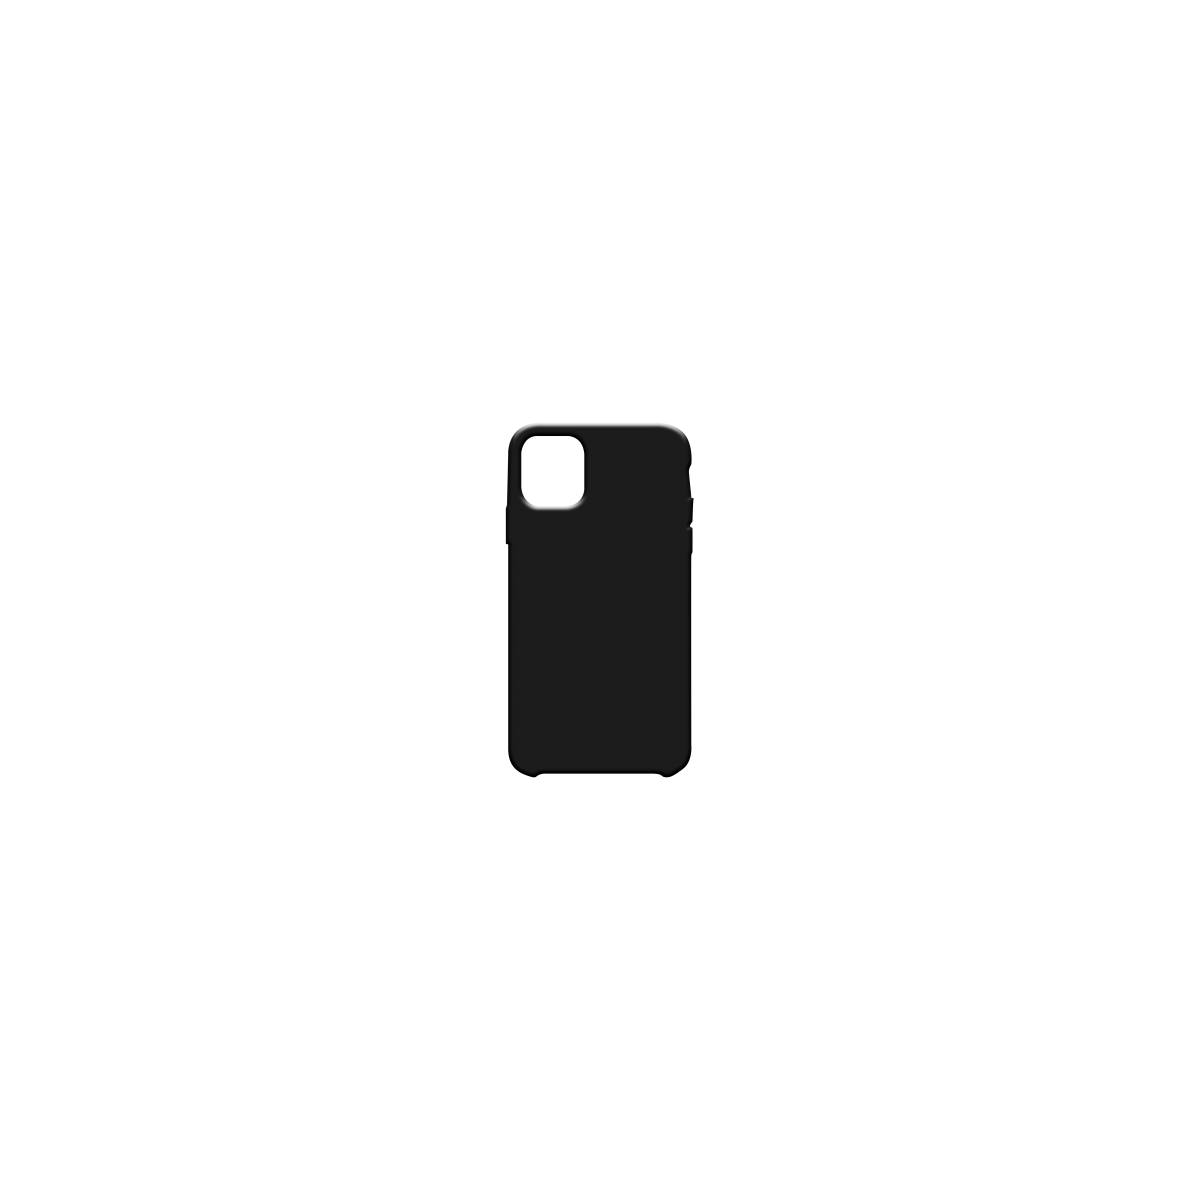 Coque soft touch Noire iPhone 11 Pro